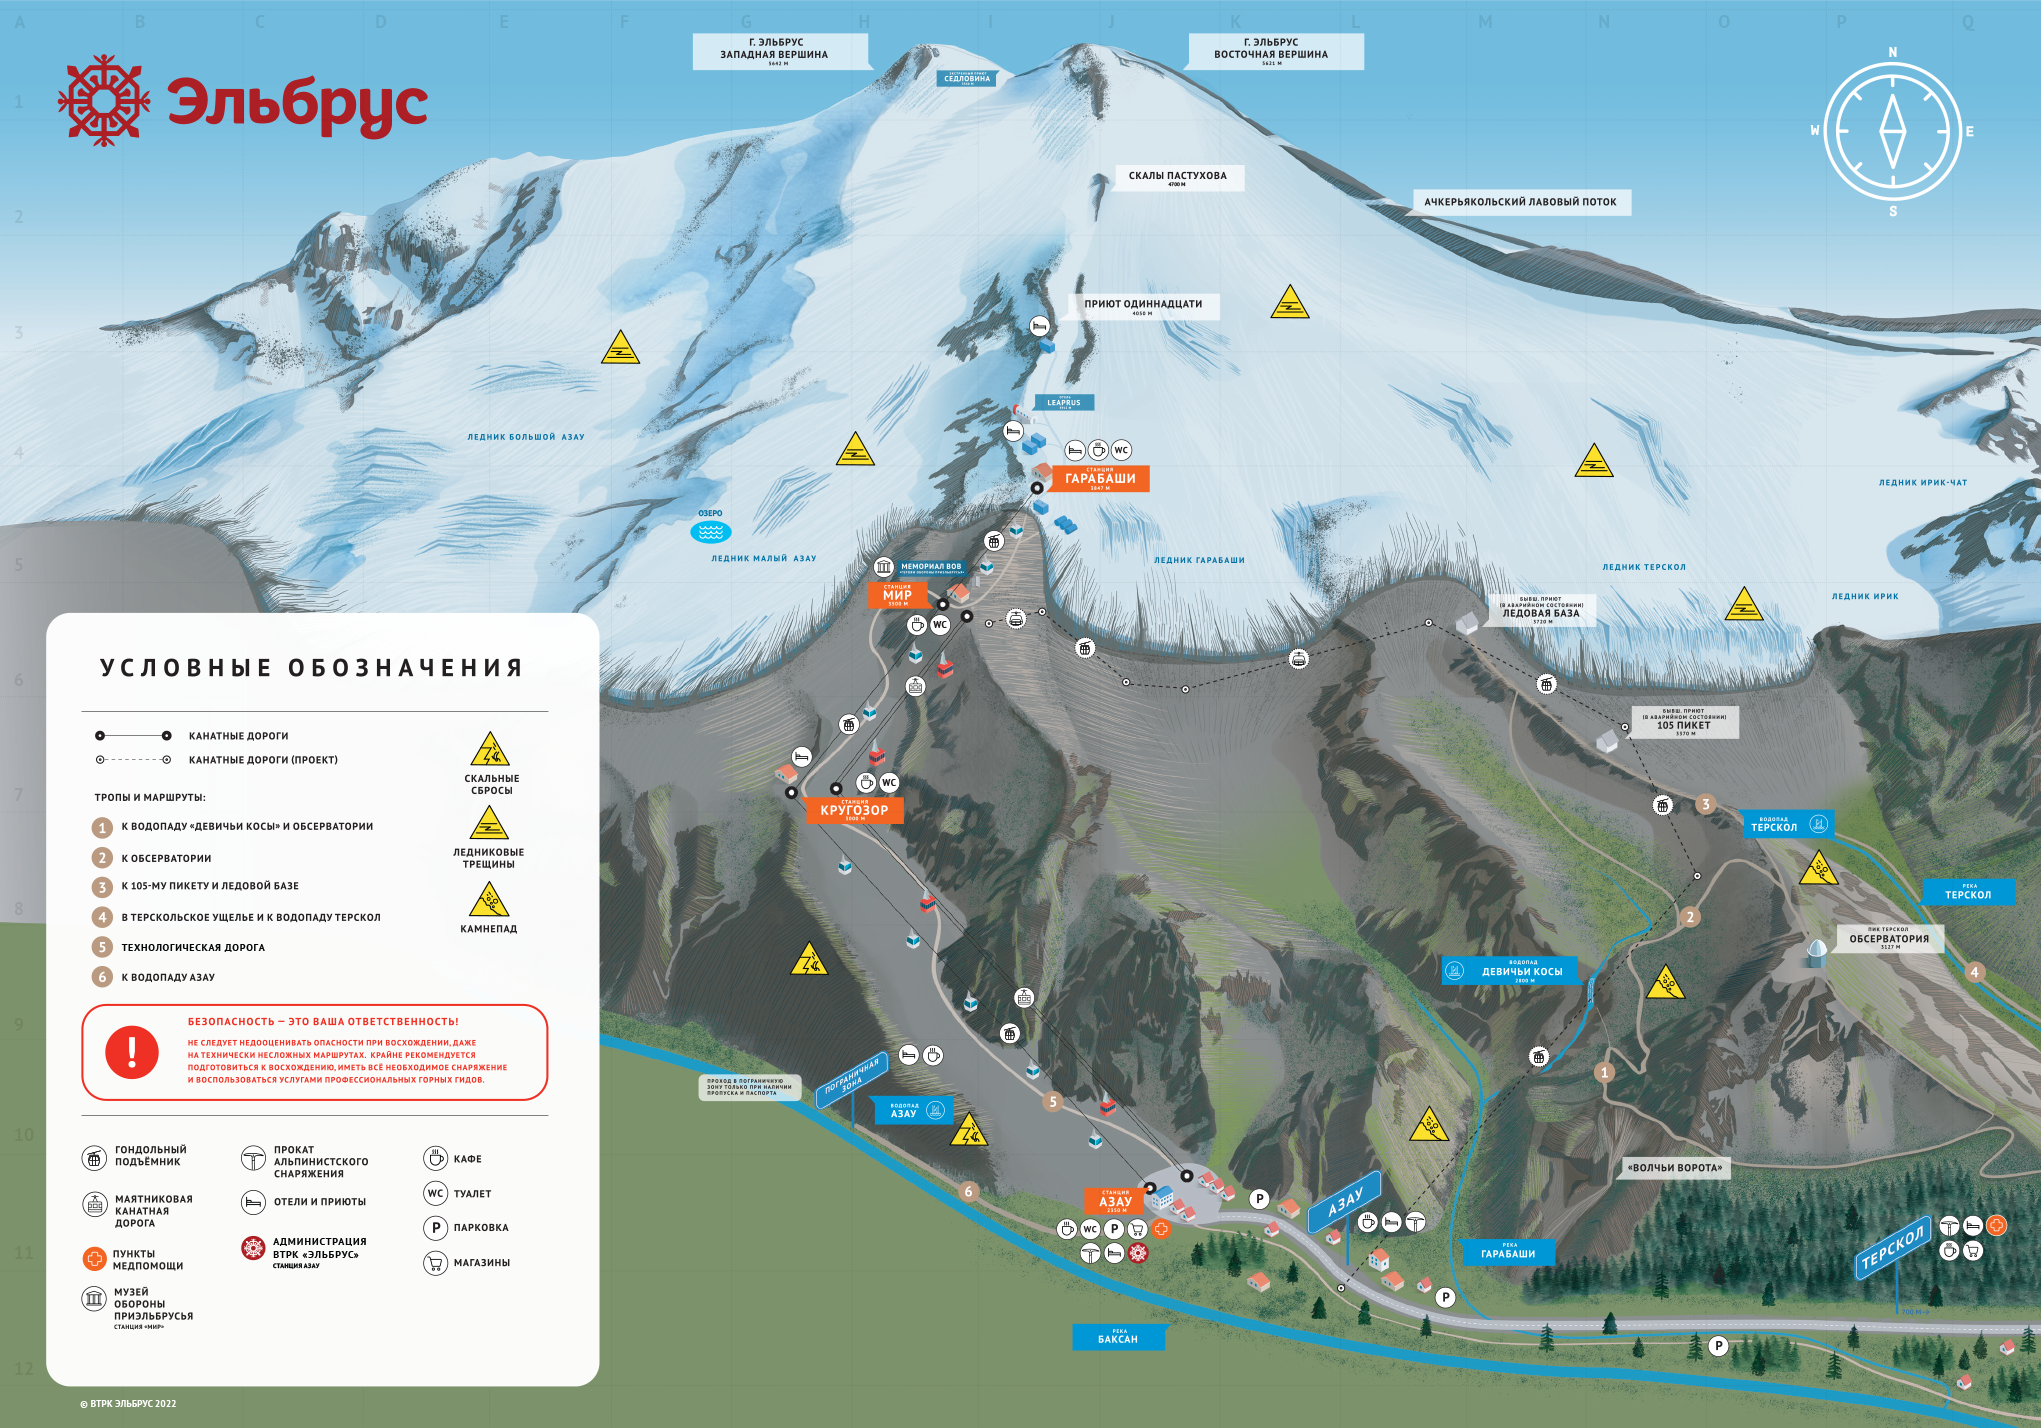 Расстояние азау. Приэльбрусье горнолыжный курорт схема. План курорта Эльбрус. Горнолыжные трассы Приэльбрусья Азау схема. Эльбрус горнолыжный курорт схема трасс 2023.